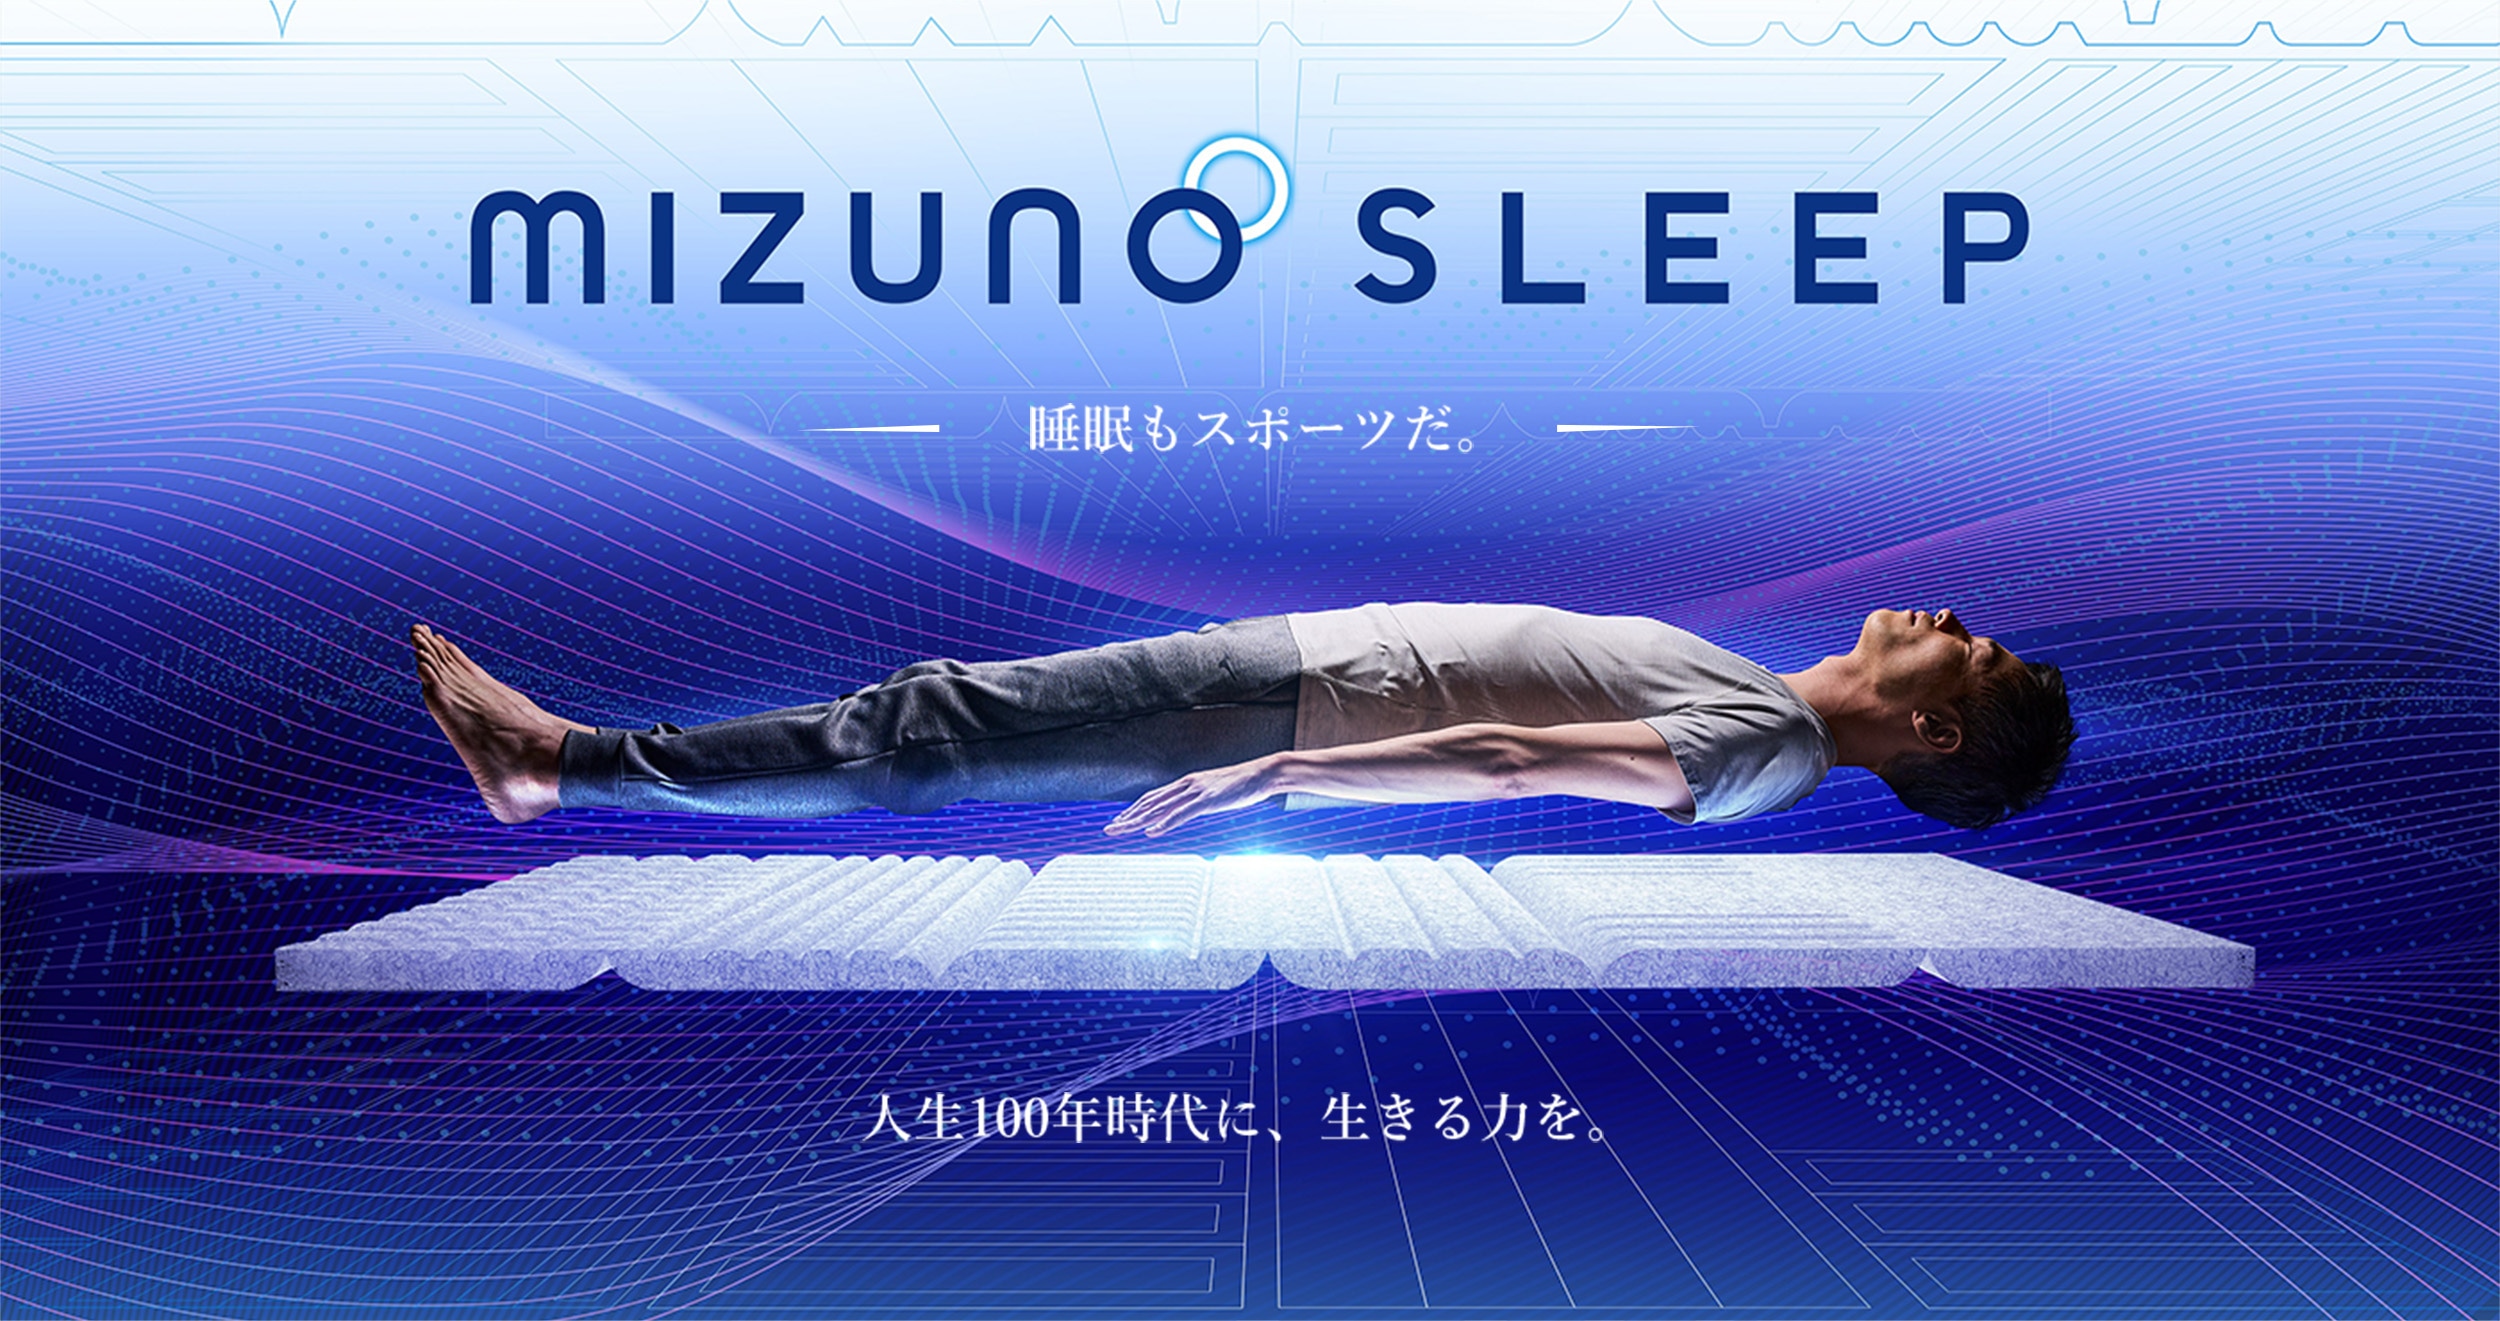 MIZUNO SLEEP 人生100年時代に、生きる力を。